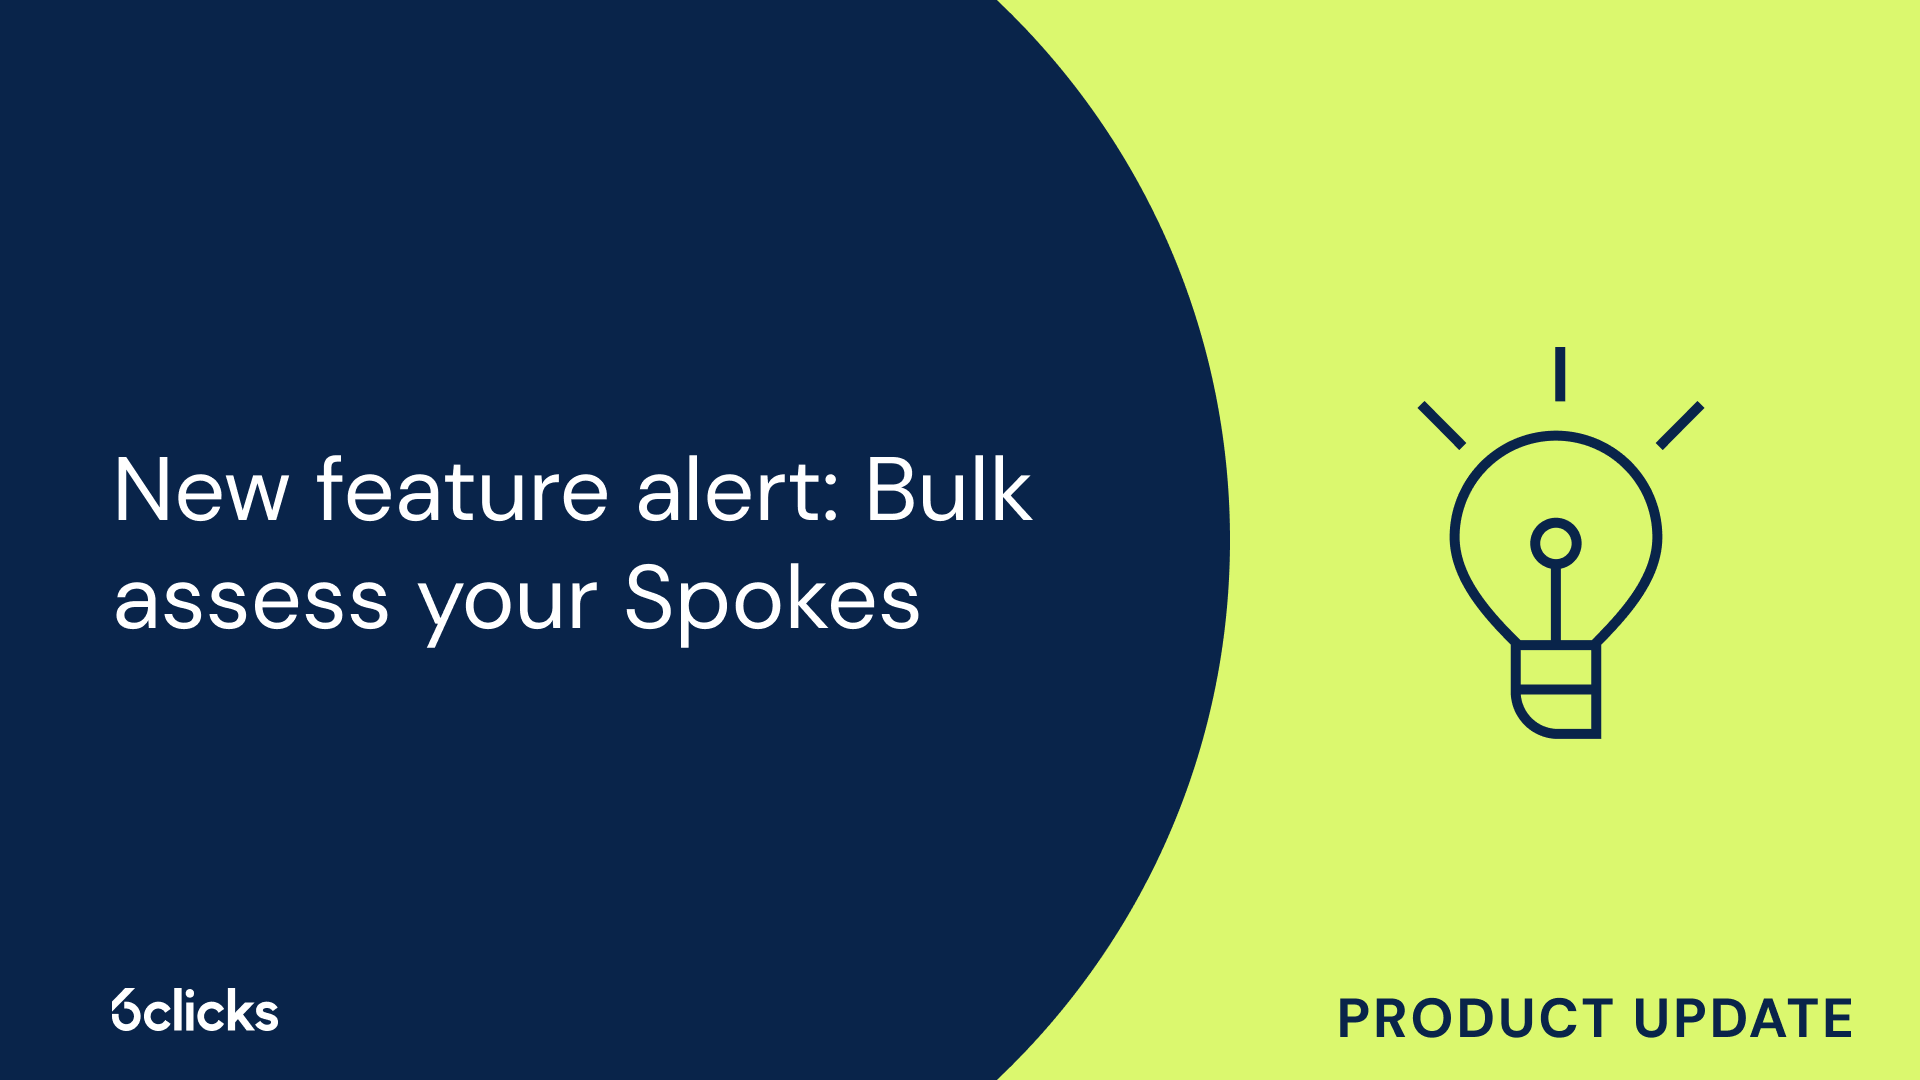 New feature alert: Bulk assess your Spokes